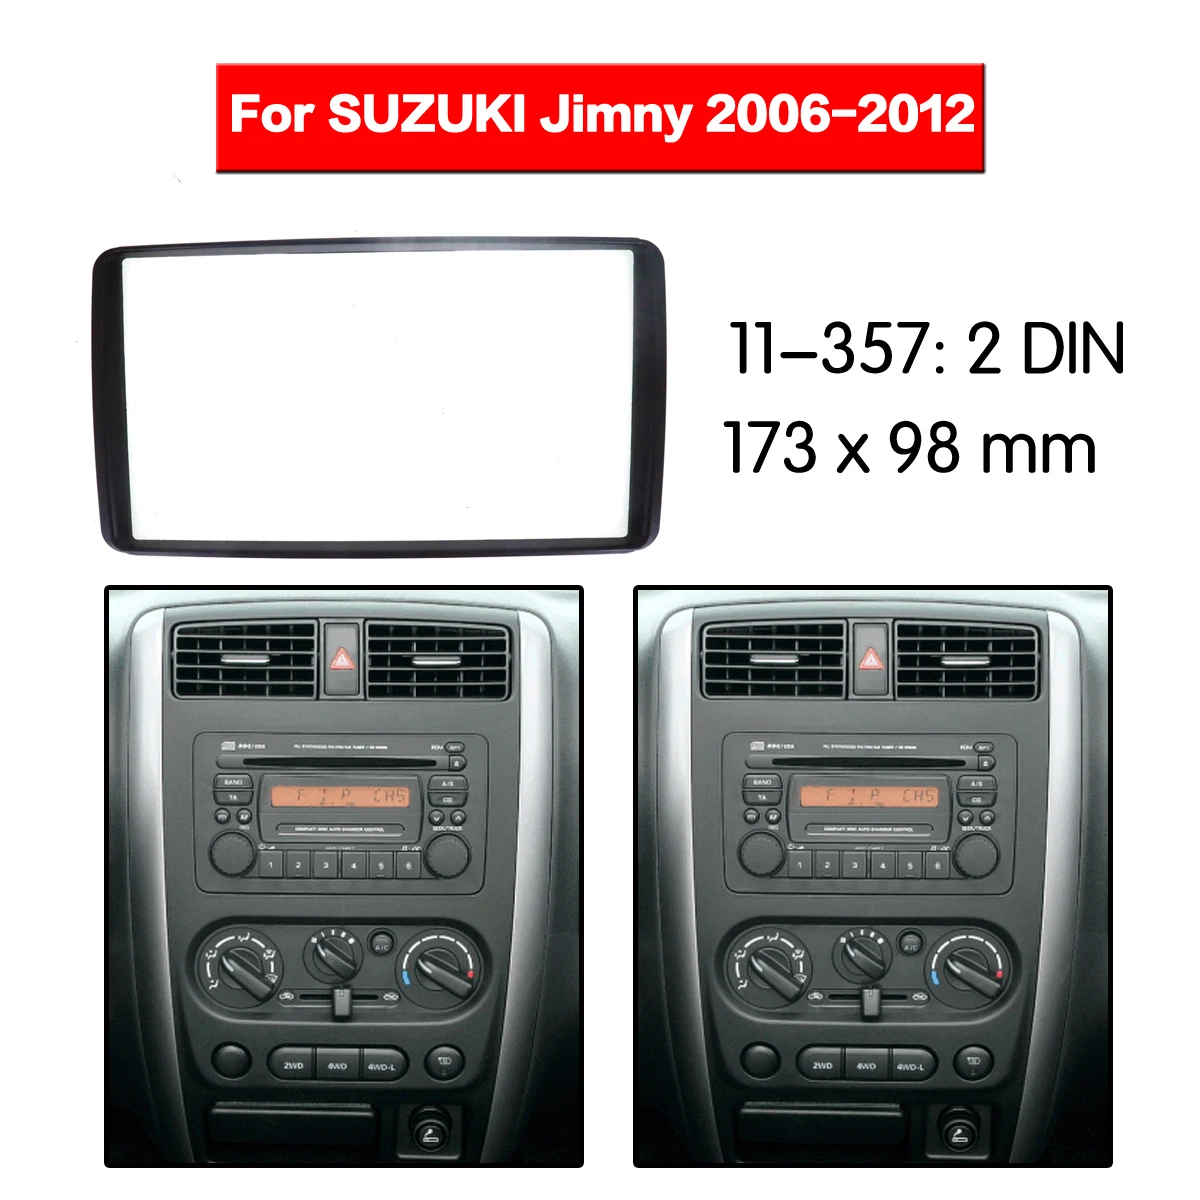 

Автомобильный радиоприемник рамка аудио Fascia Для Suzuki Jimny 2006 - 2012 автомобильное стерео радио Fascia панель монтажный адаптер DVD плеер рамка